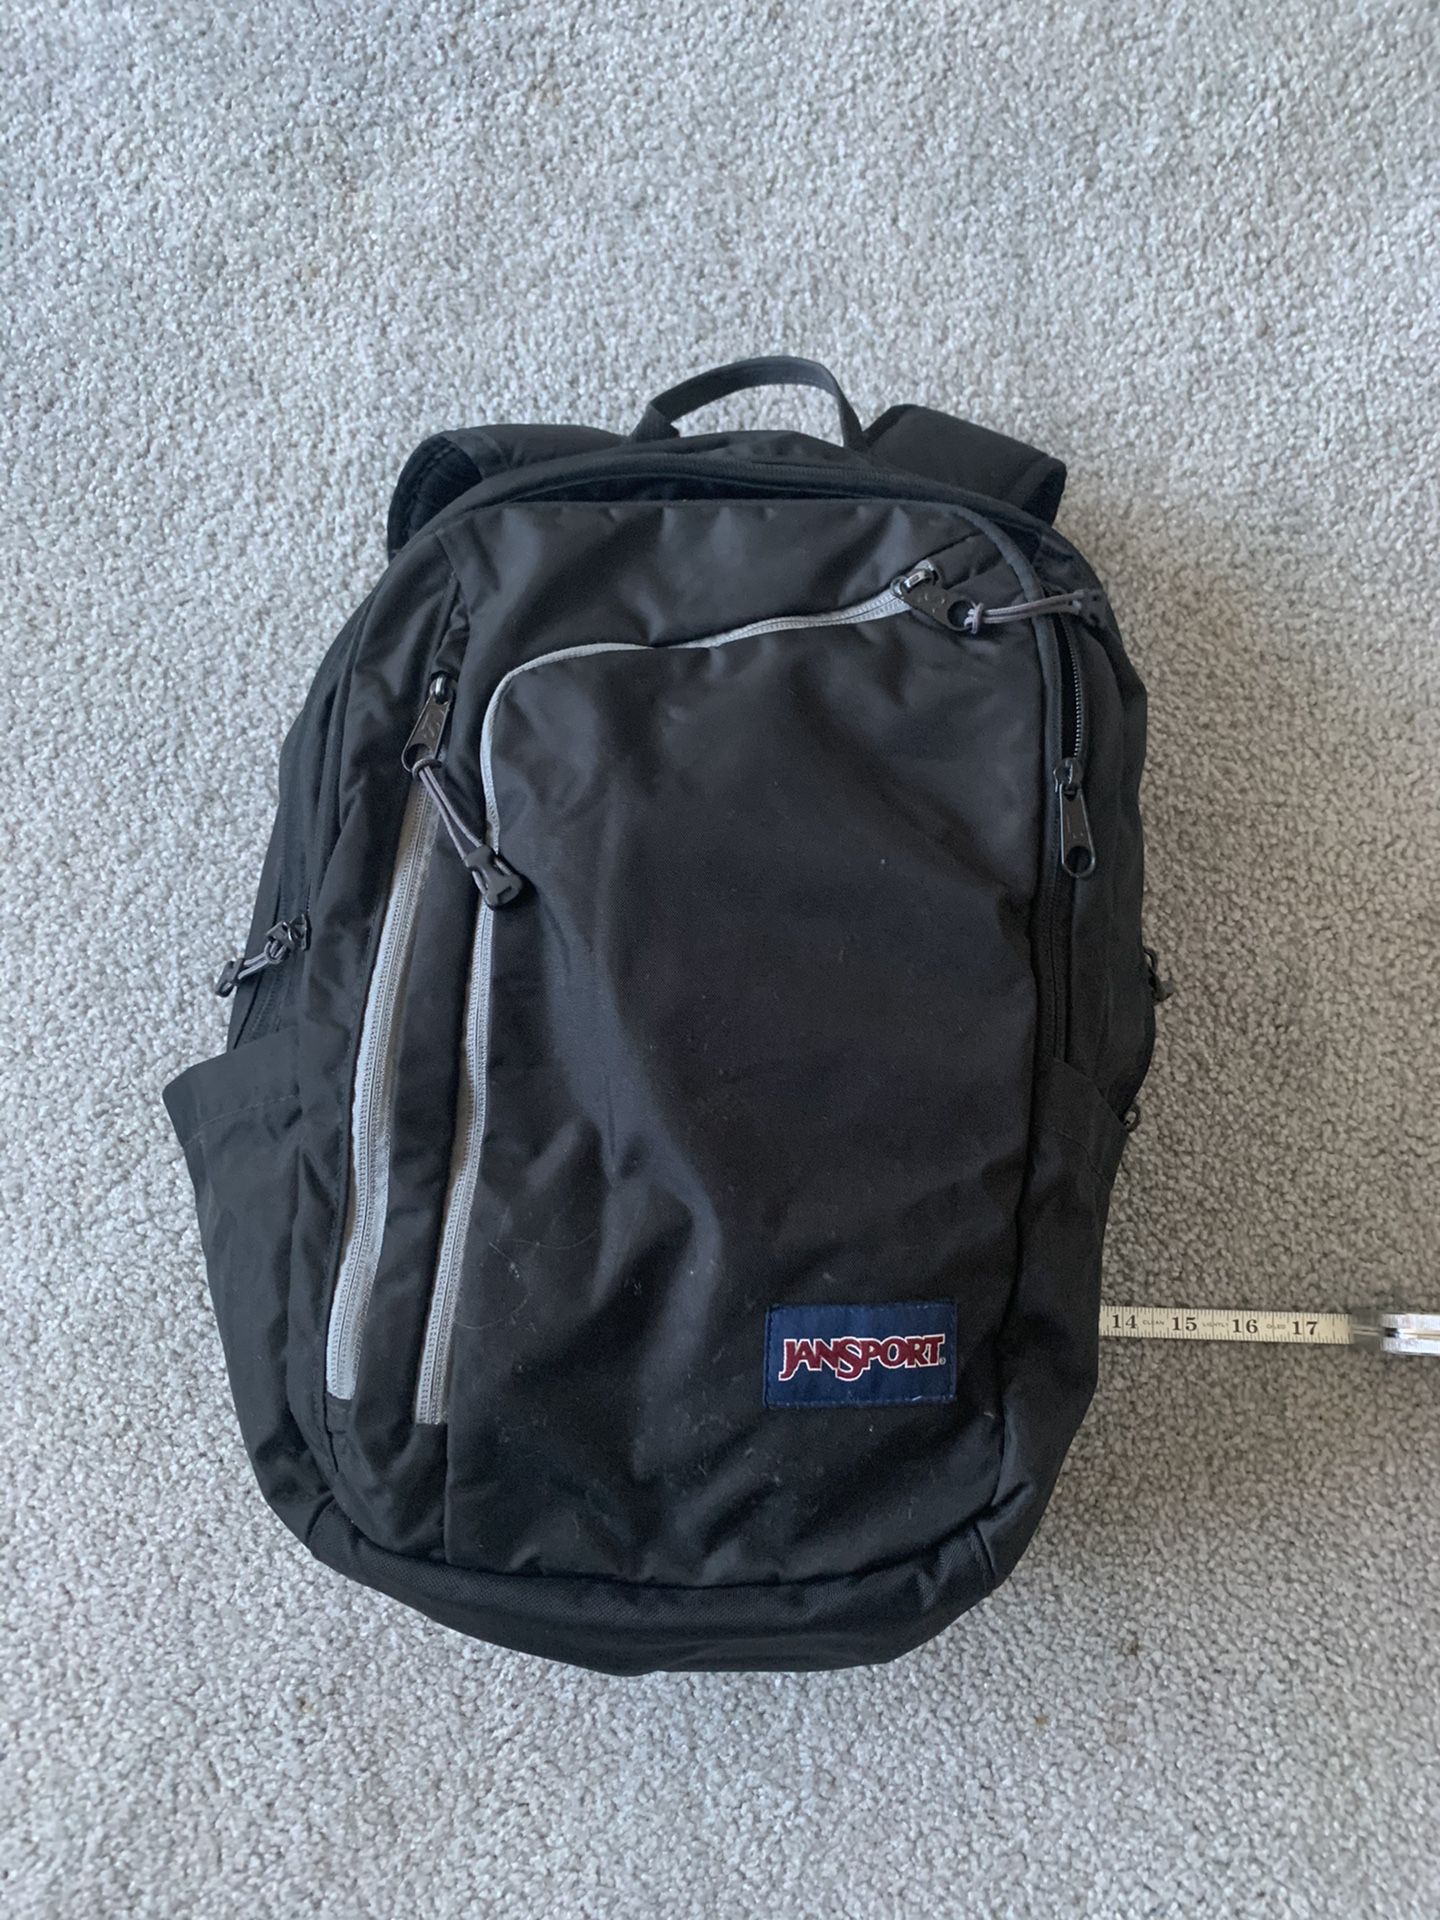 Backpack JANSPORT, black